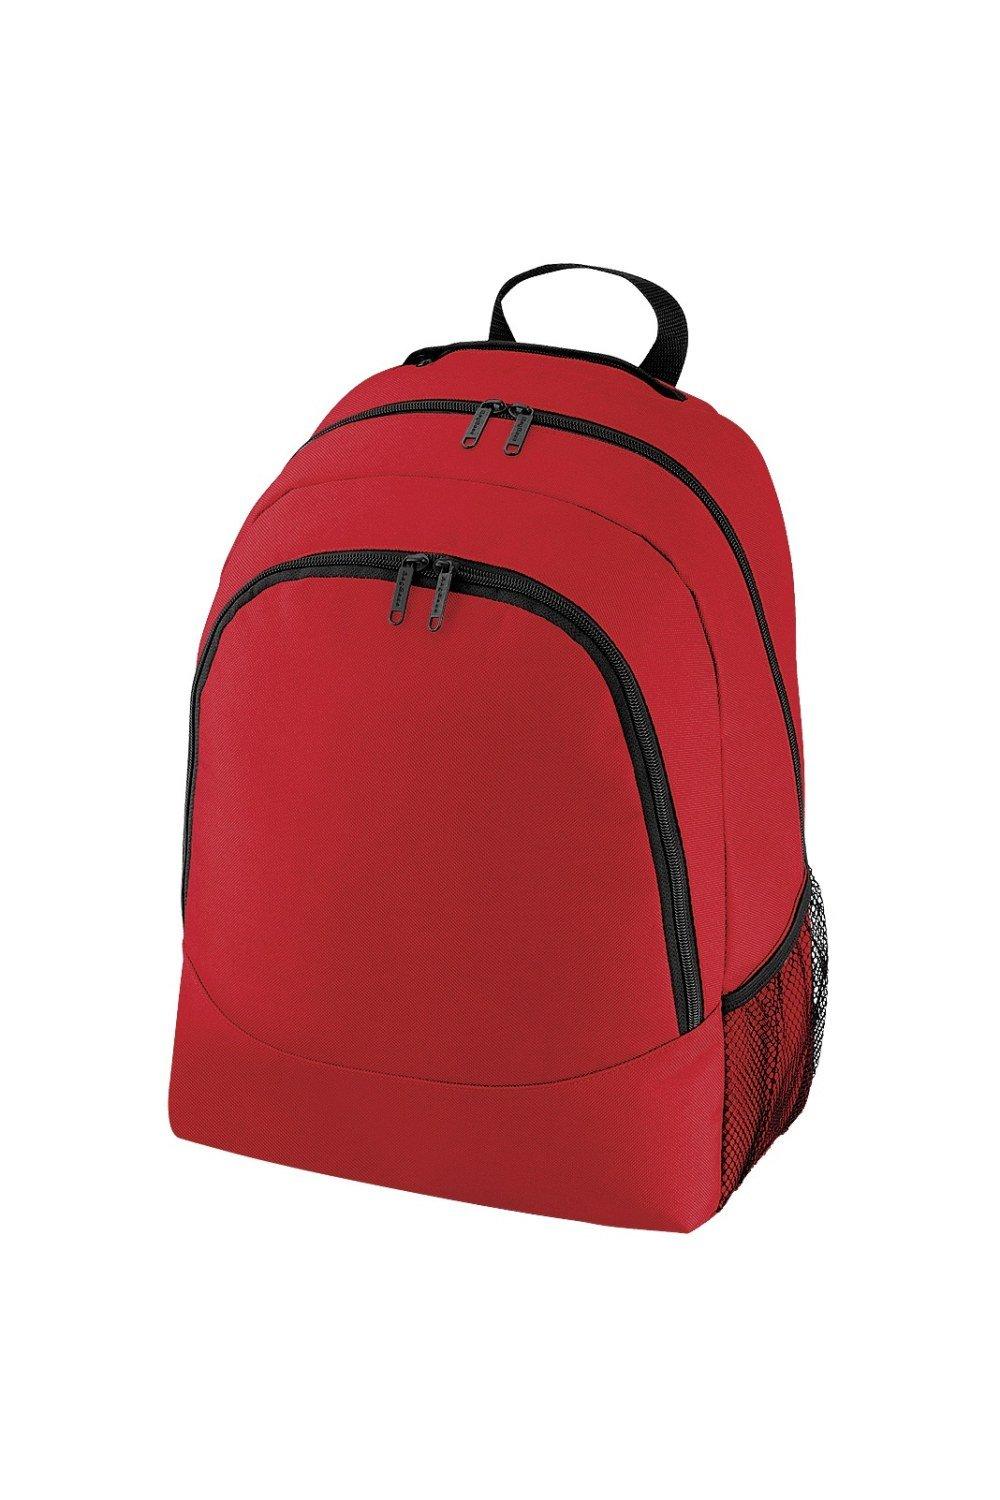 Обычный универсальный рюкзак/сумка-рюкзак (18 литров) Bagbase, красный чехол задняя панель накладка бампер mypads mp3 для huawei honor 6 plus pe ul00 tl20 tl10 cl00 75 7 противоударный